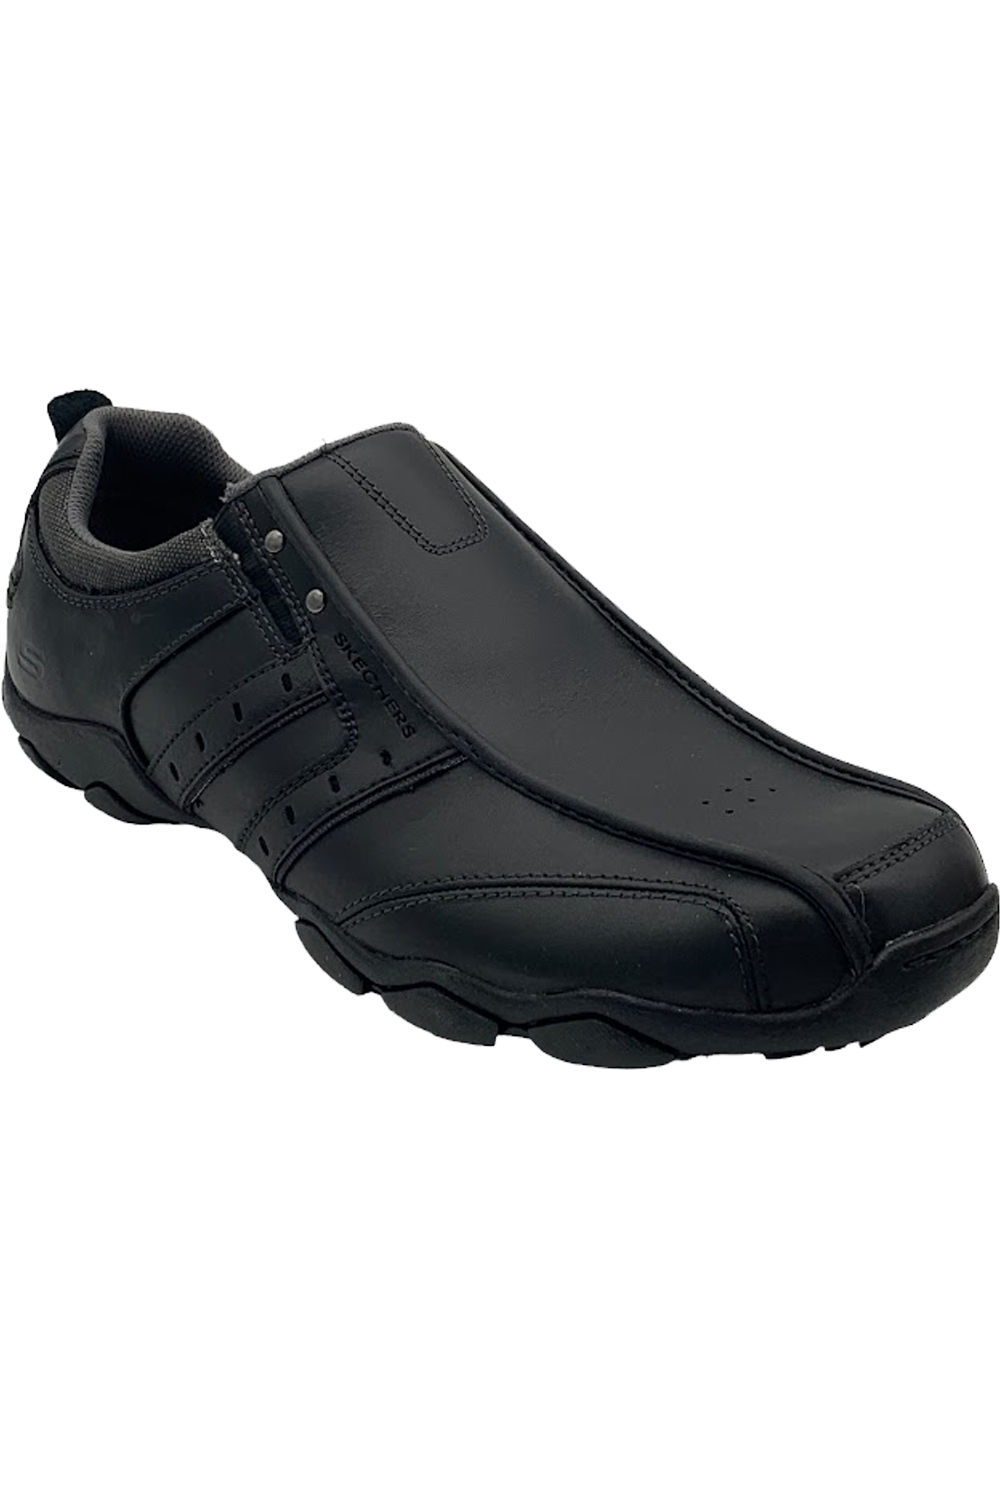 Zenuw agitatie Verantwoordelijk persoon Skechers Men's Diameter Heisman Shoes Black | Jender